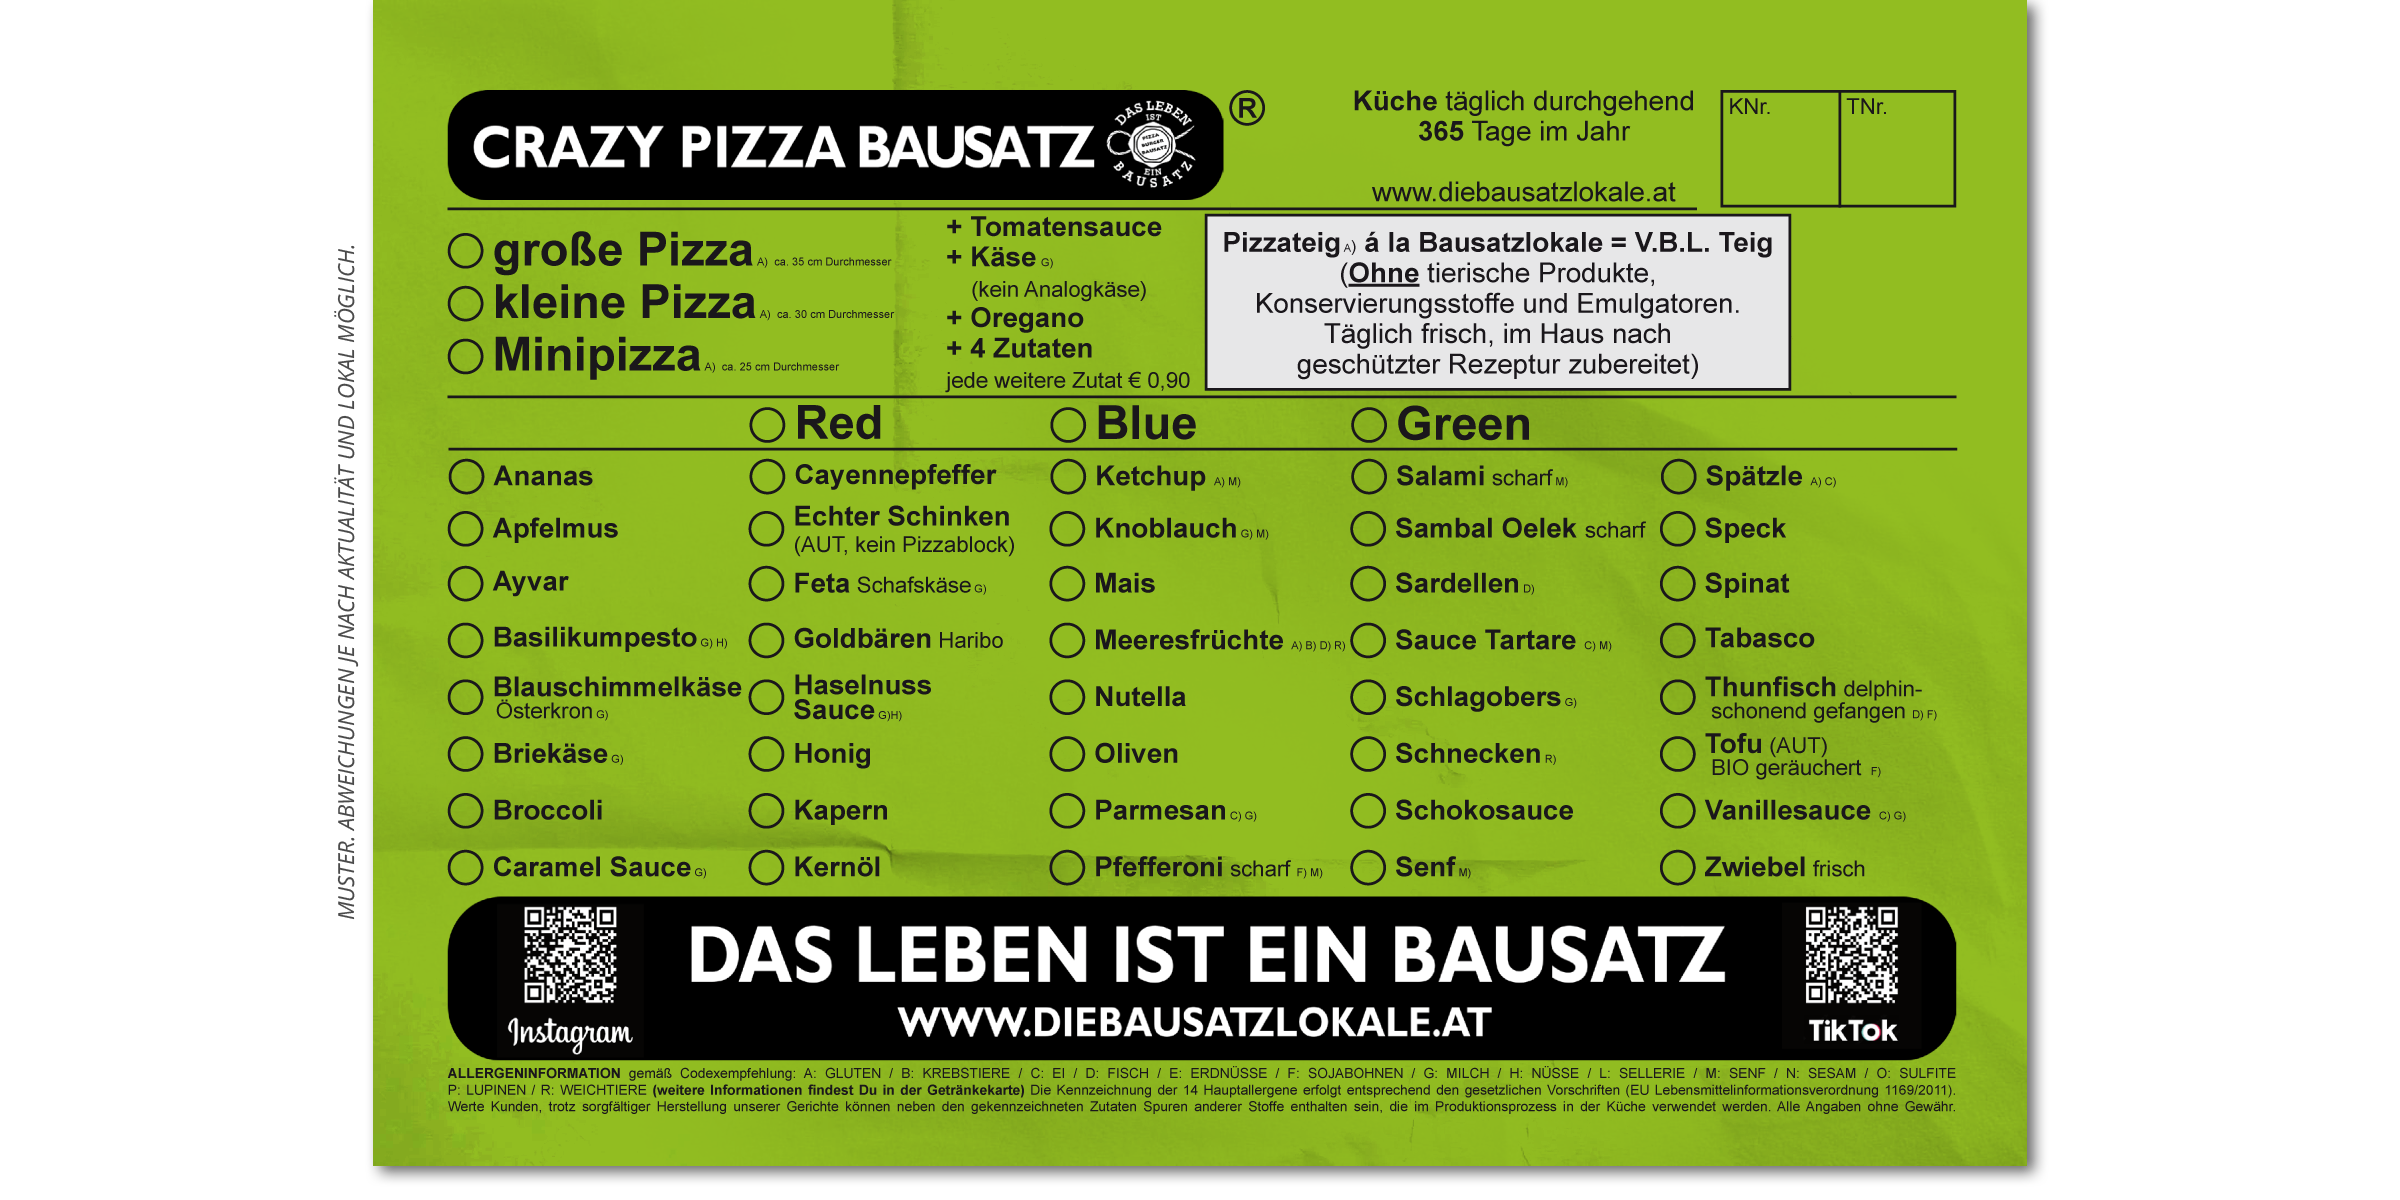 002c-Graz-Pizza-Burger-Restaurant-Bausatz-Crazy-Pizza-Uni-Saegewerk-Heinrich